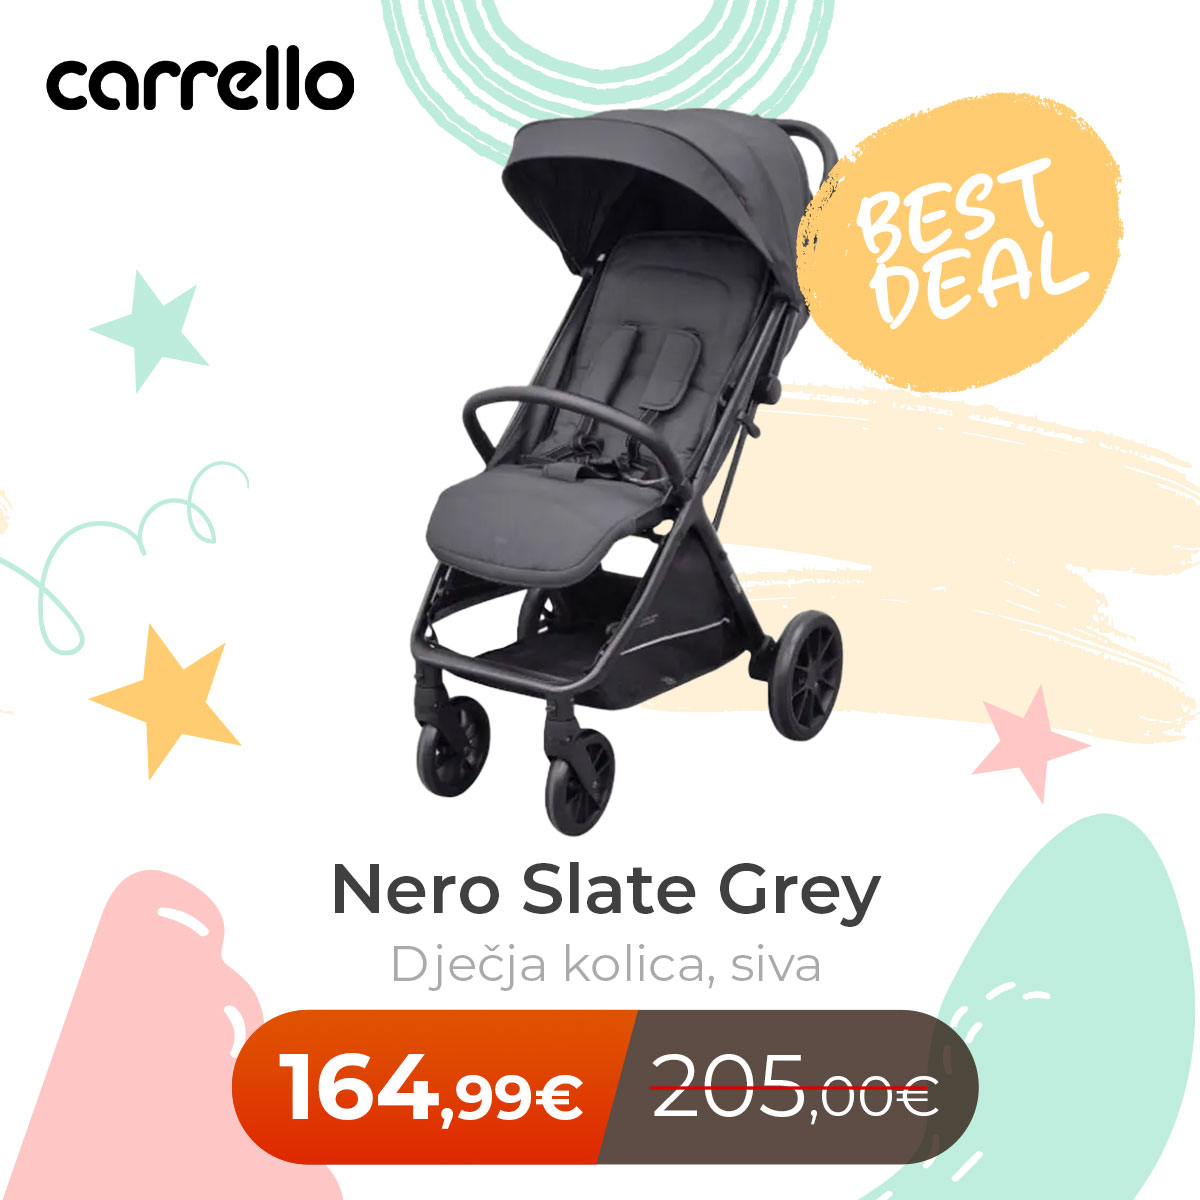 CARRELLO Nero Slate Grey